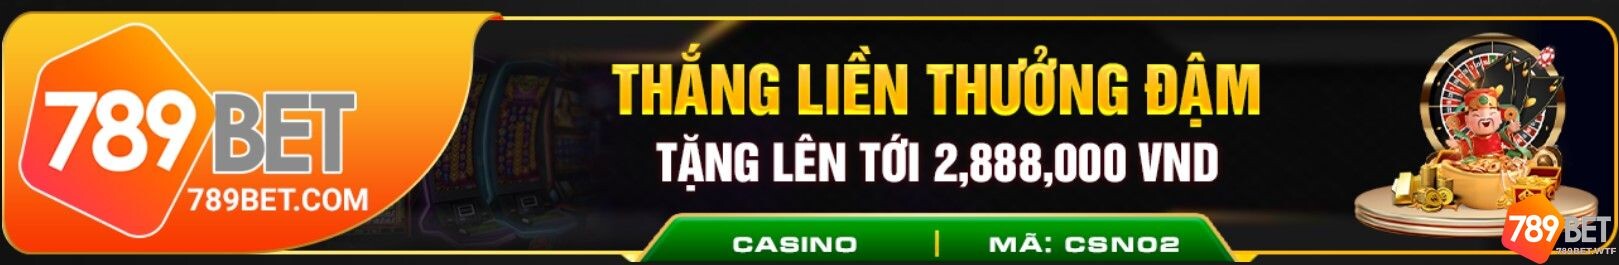 Khuyến mãi casino 789bet thưởng đến hơn 2 triệu đồng